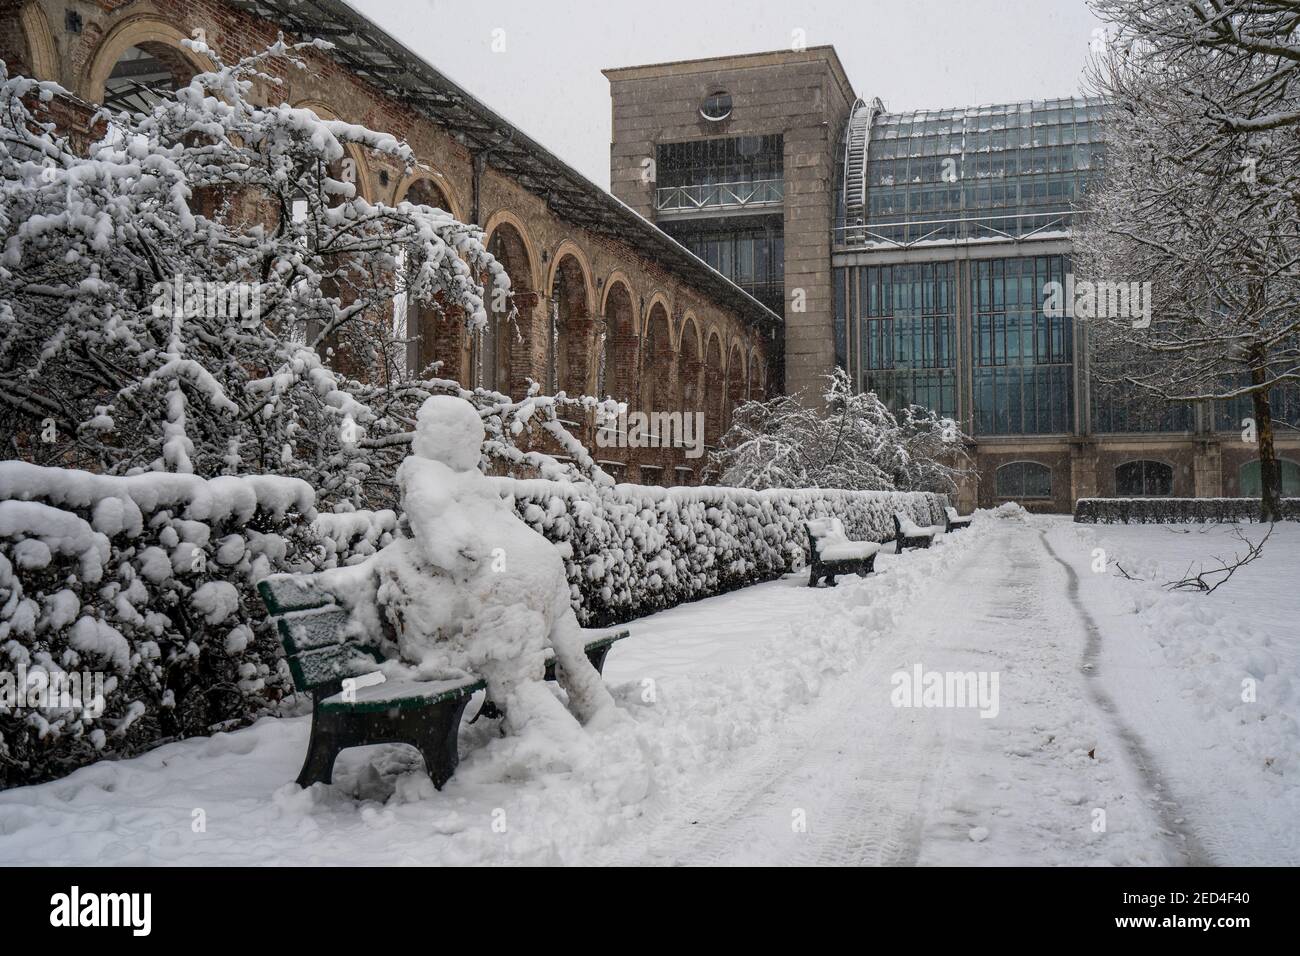 Bayerische Staatskanzlei / Bavarian Government on a snowy Day, Munich Stock Photo